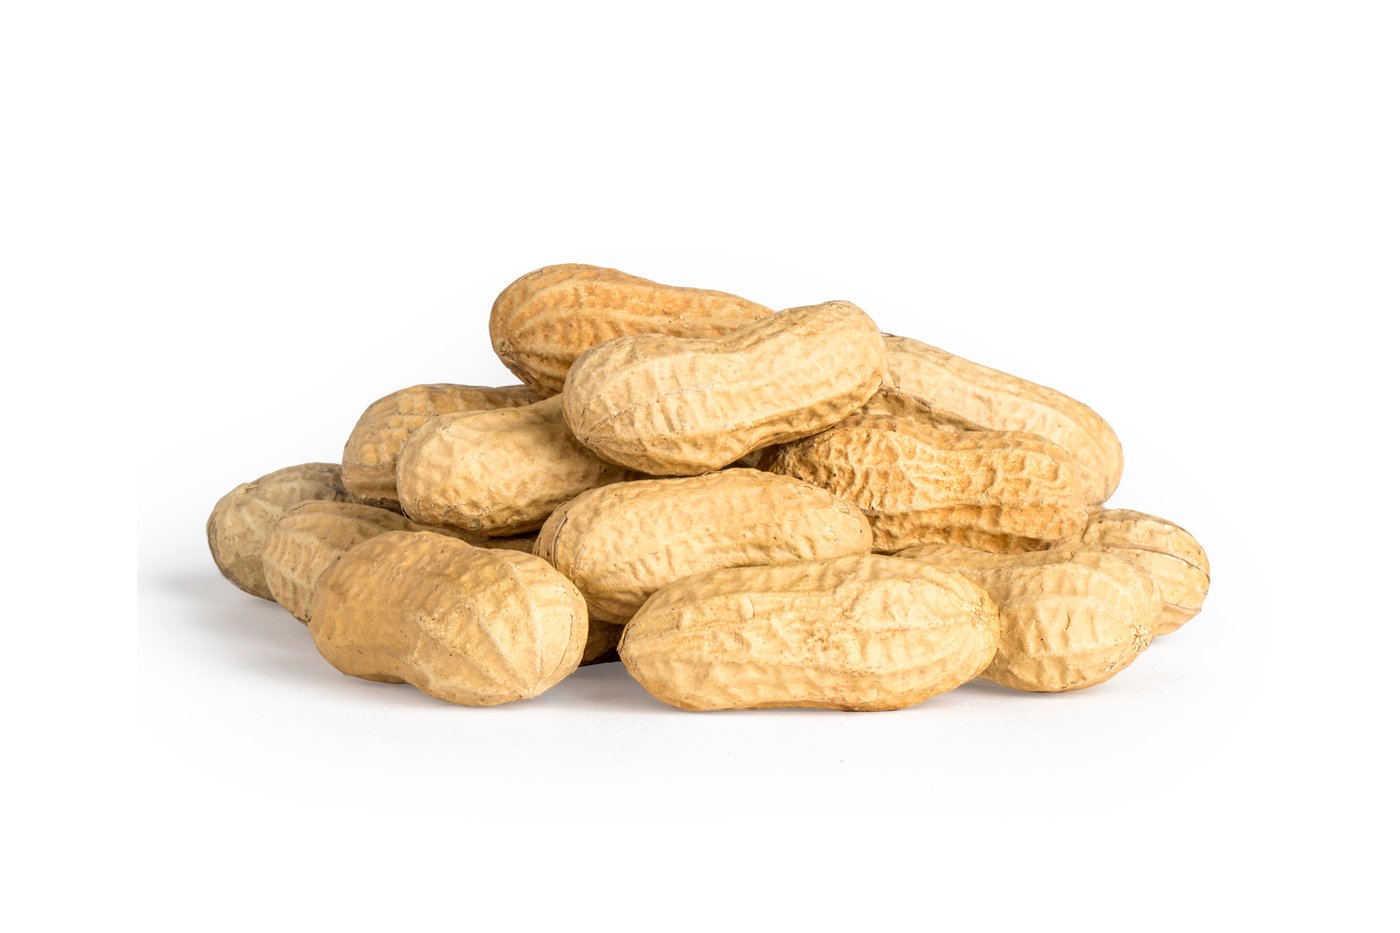 Jumbo Roasted Peanuts (In Shell) photo